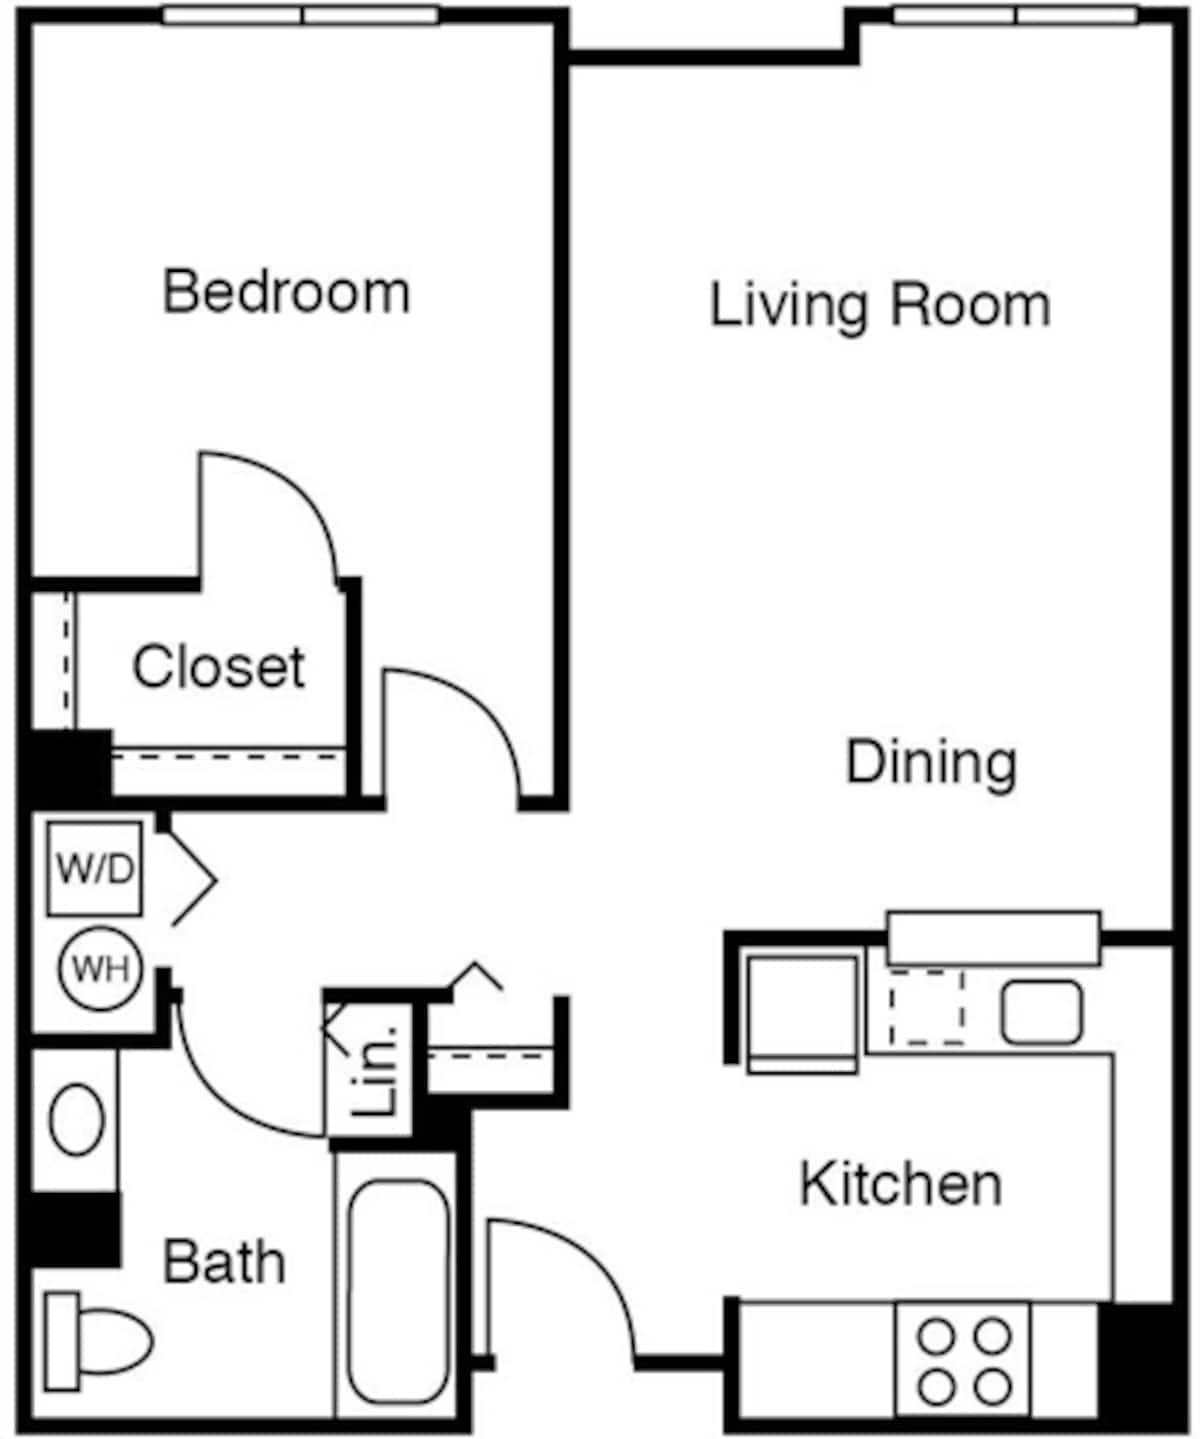 Floorplan diagram for 1 Bedroom F, showing 1 bedroom